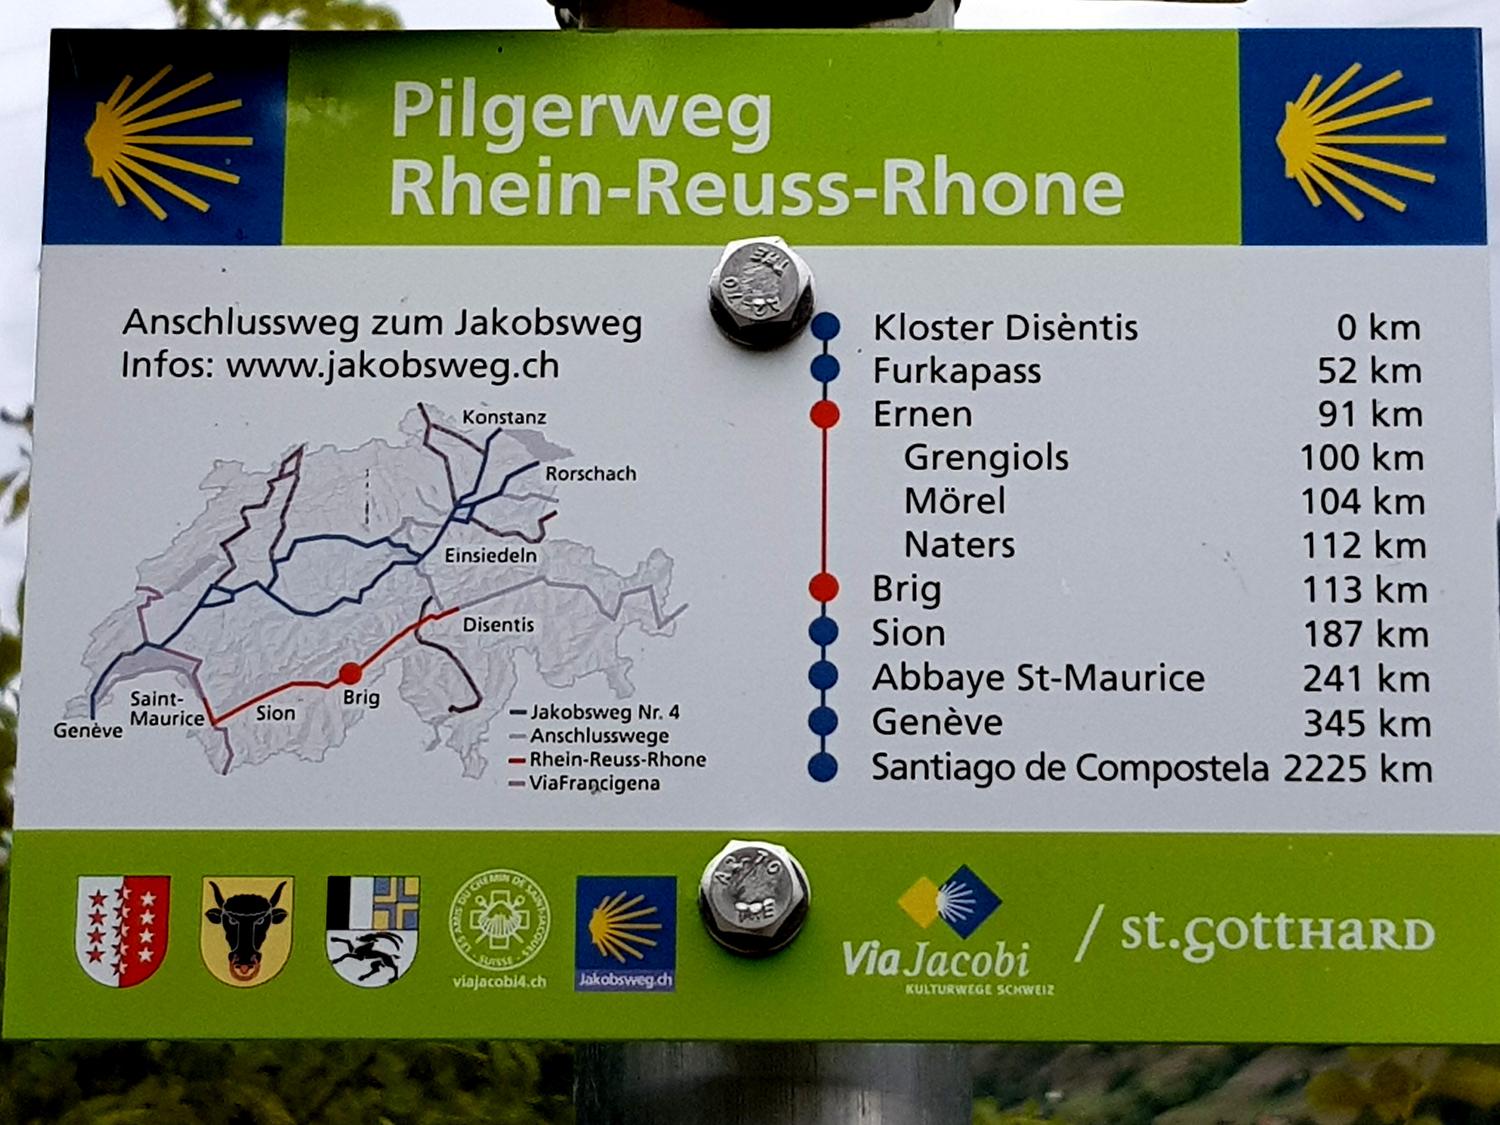 Rhein-Reuss-Rhone Way